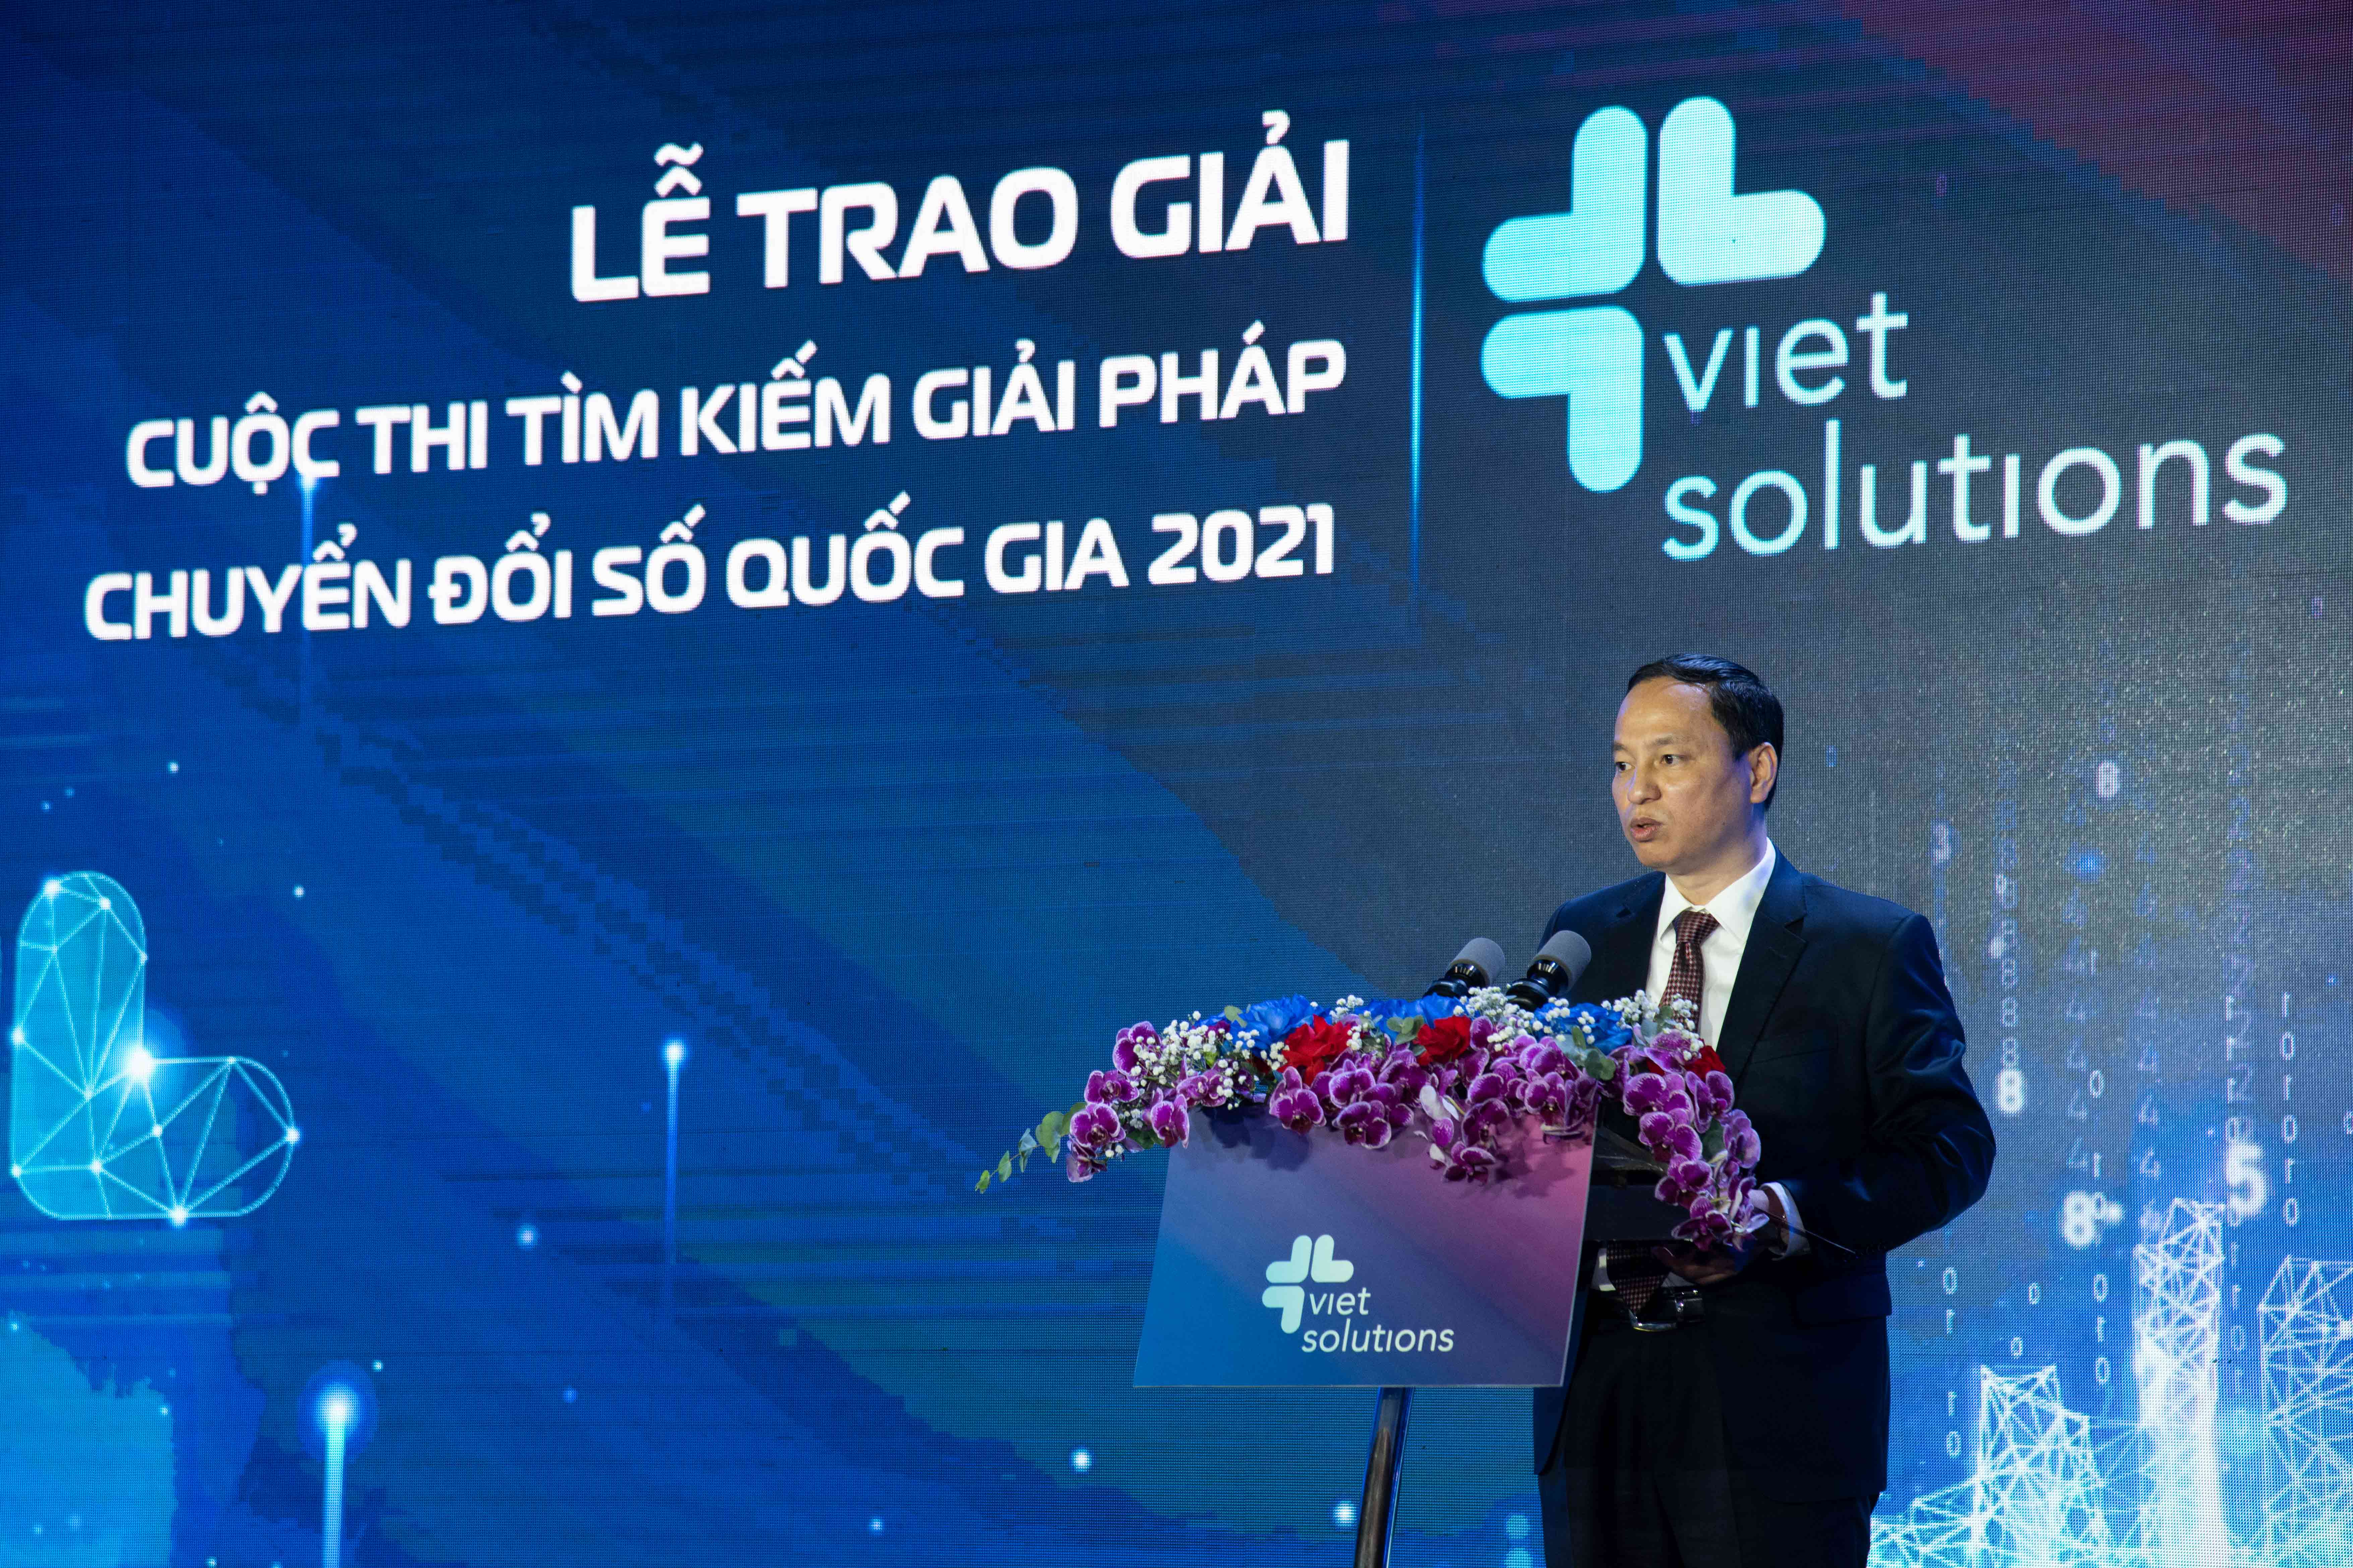 Ông Nguyễn Đình Chiến, Phó Tổng Giám đốc Tập đoàn Viettel